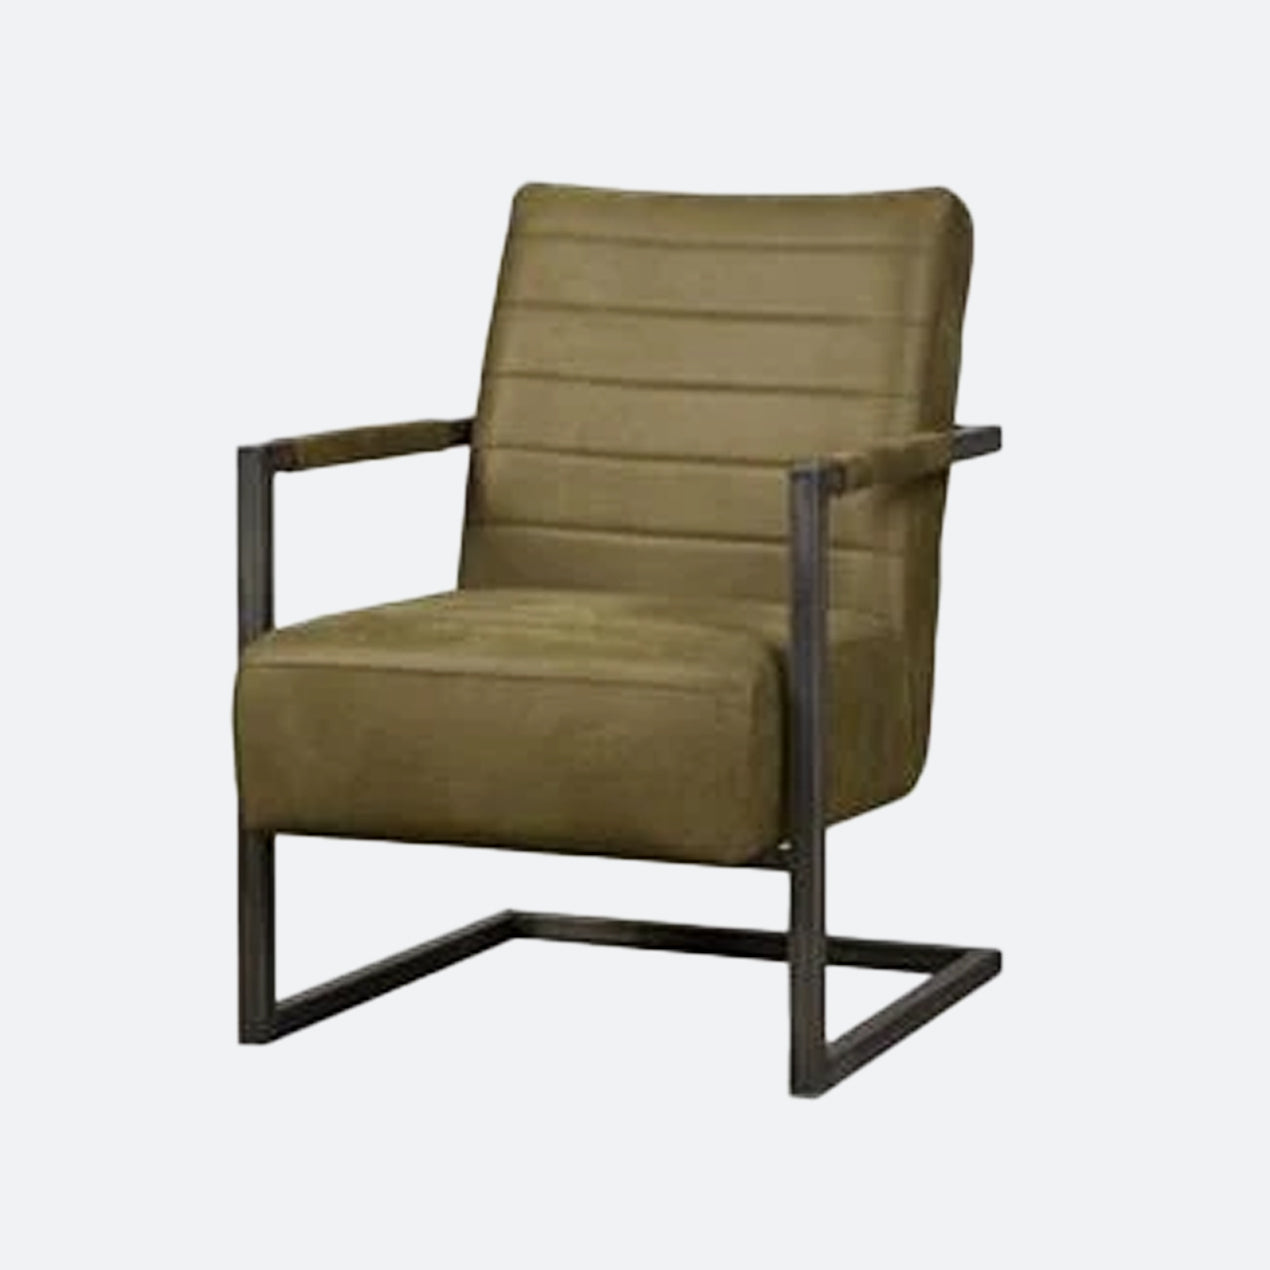 Jouw industriele fauteuil zoek je gemakkelijk uit in deze collectie met mooie fauteuil industrieel. In verschillende kleuren en materialen beschikbaar. Vind jouw nieuwe fauteuil industrieel bij MeubelBaas.